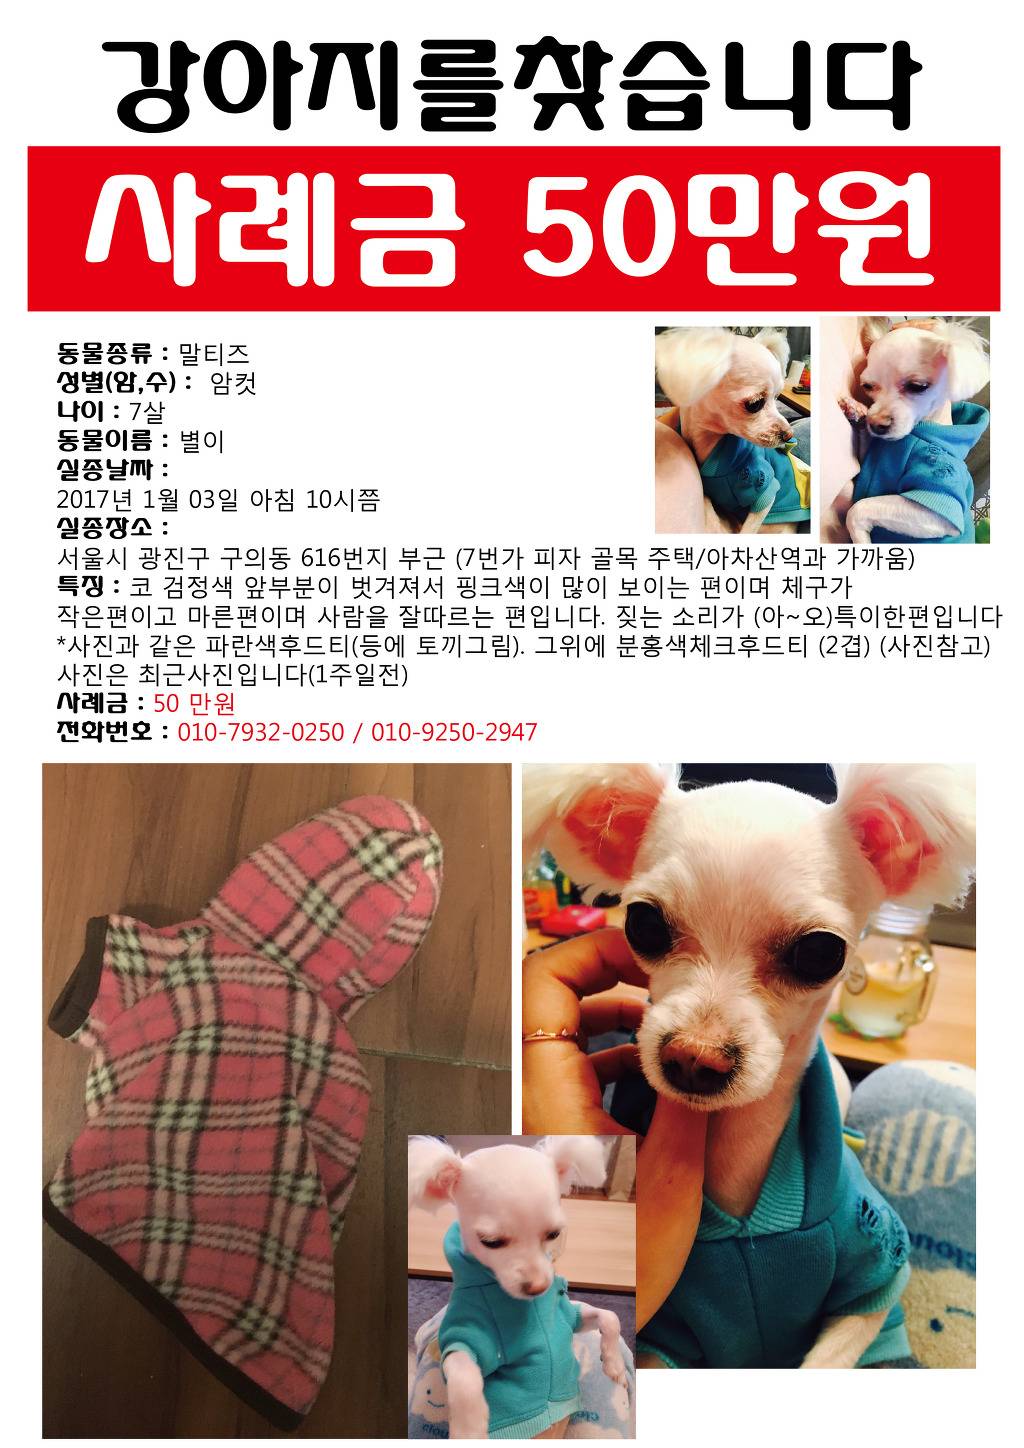 [사례금50만원] 강아지를 찾습니다. 서울시 광진구 구의동에서 잃어버렸어요 광진구 여시들 한번만 봐주세요ㅠㅠ | 인스티즈